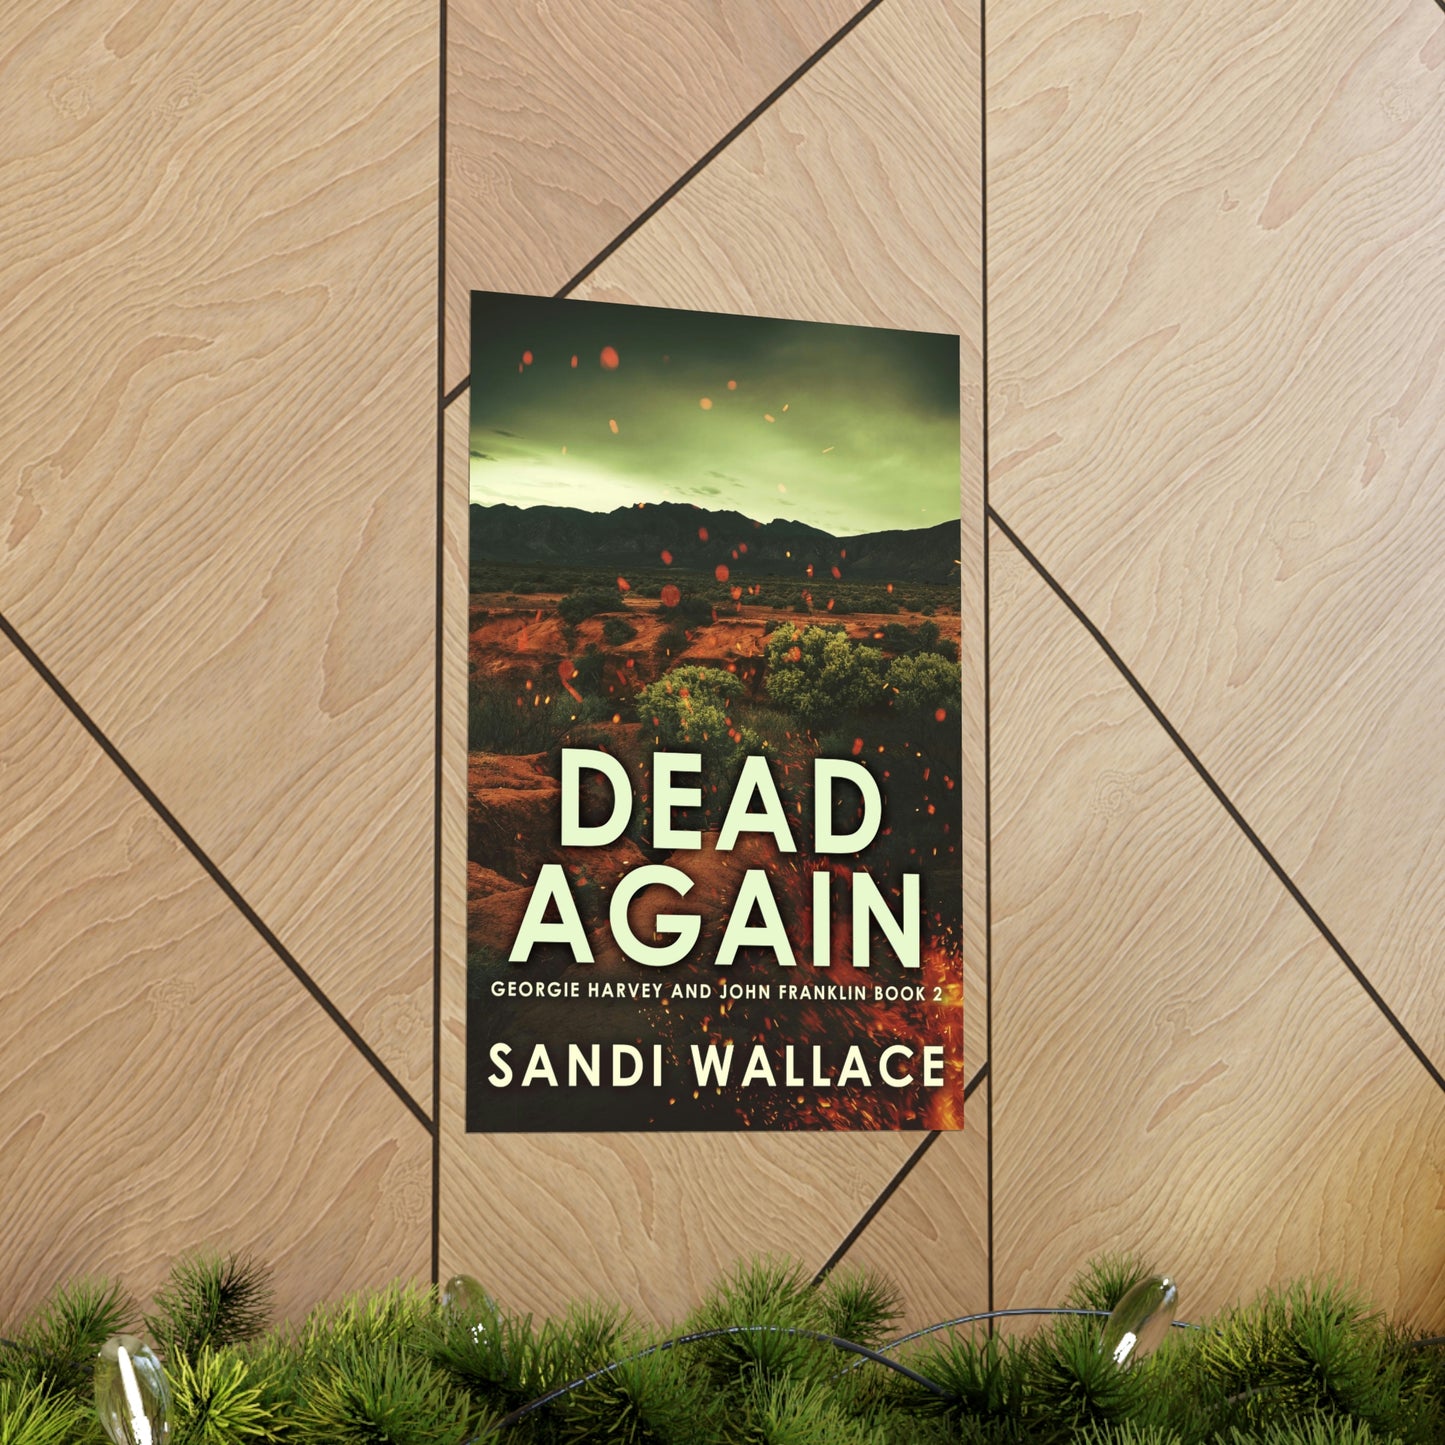 Dead Again - Matte Poster